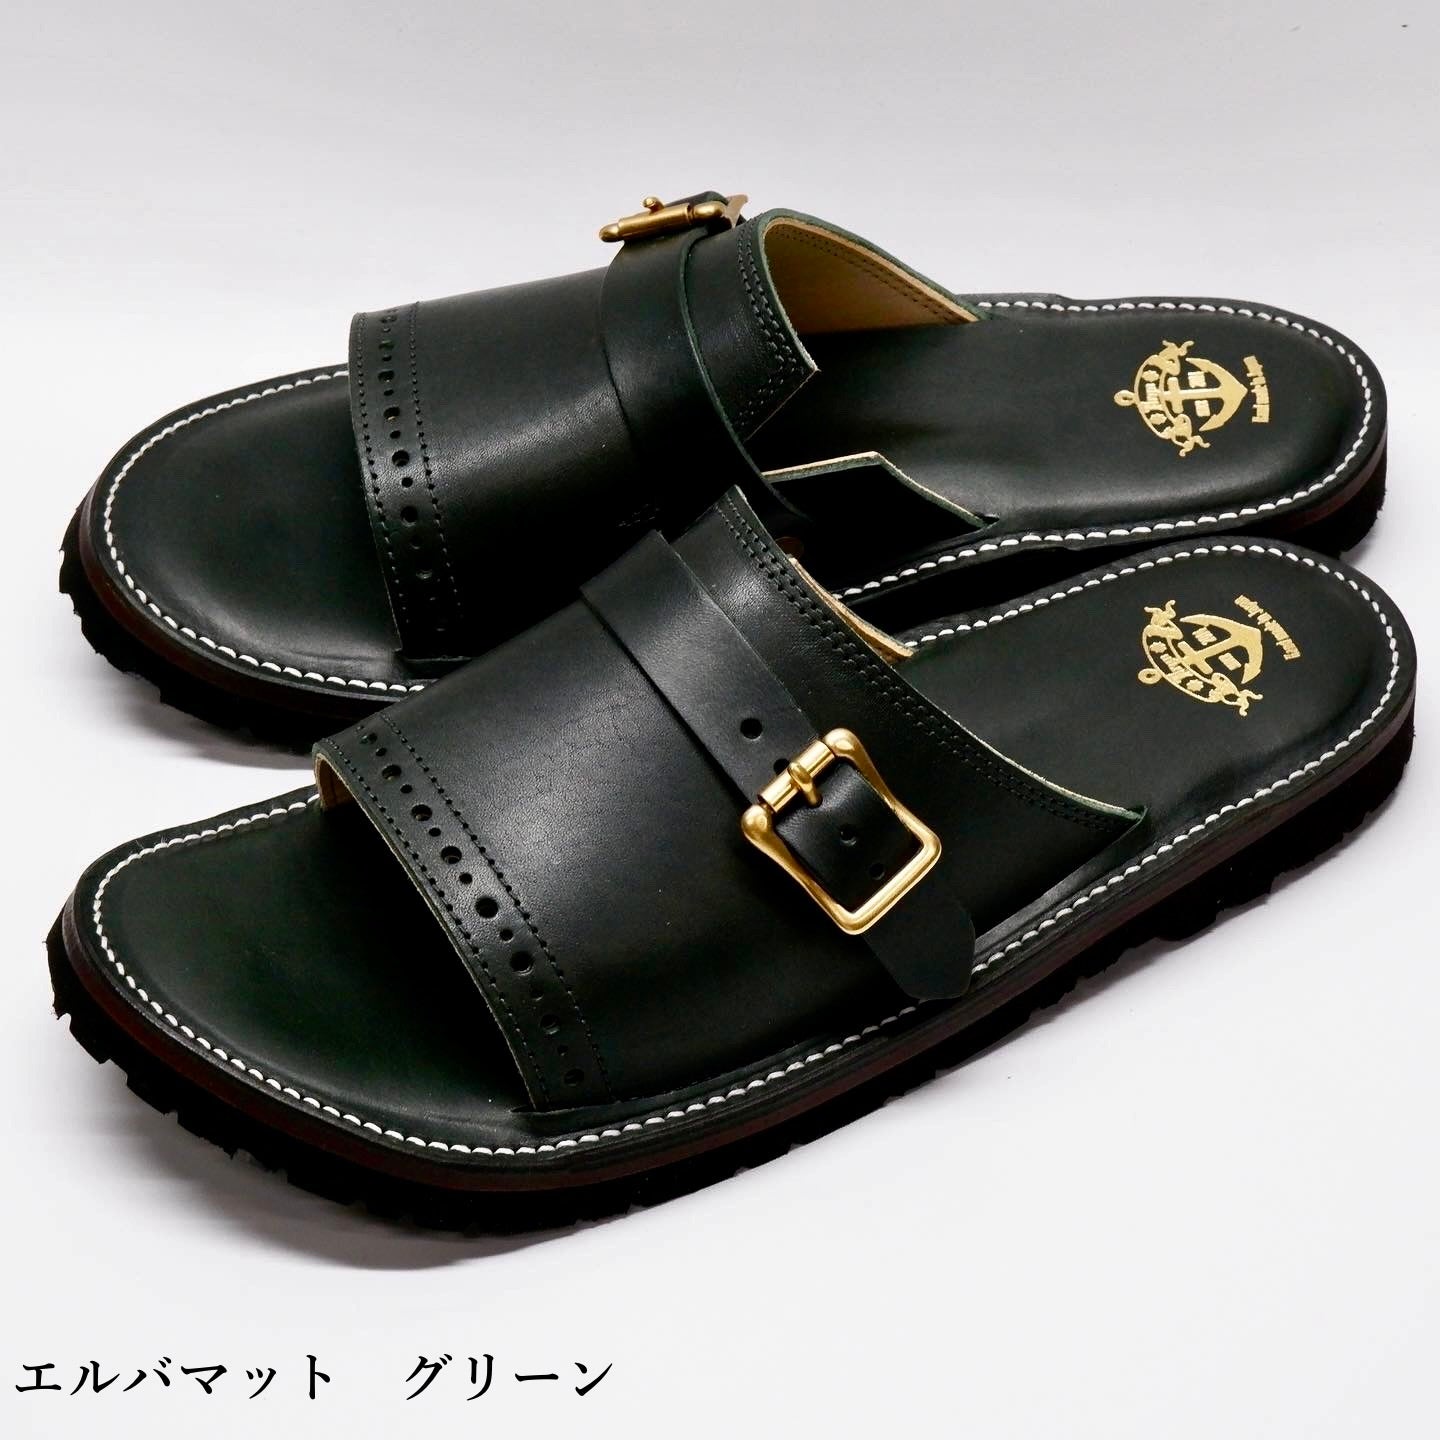 monk strap sandals SA10